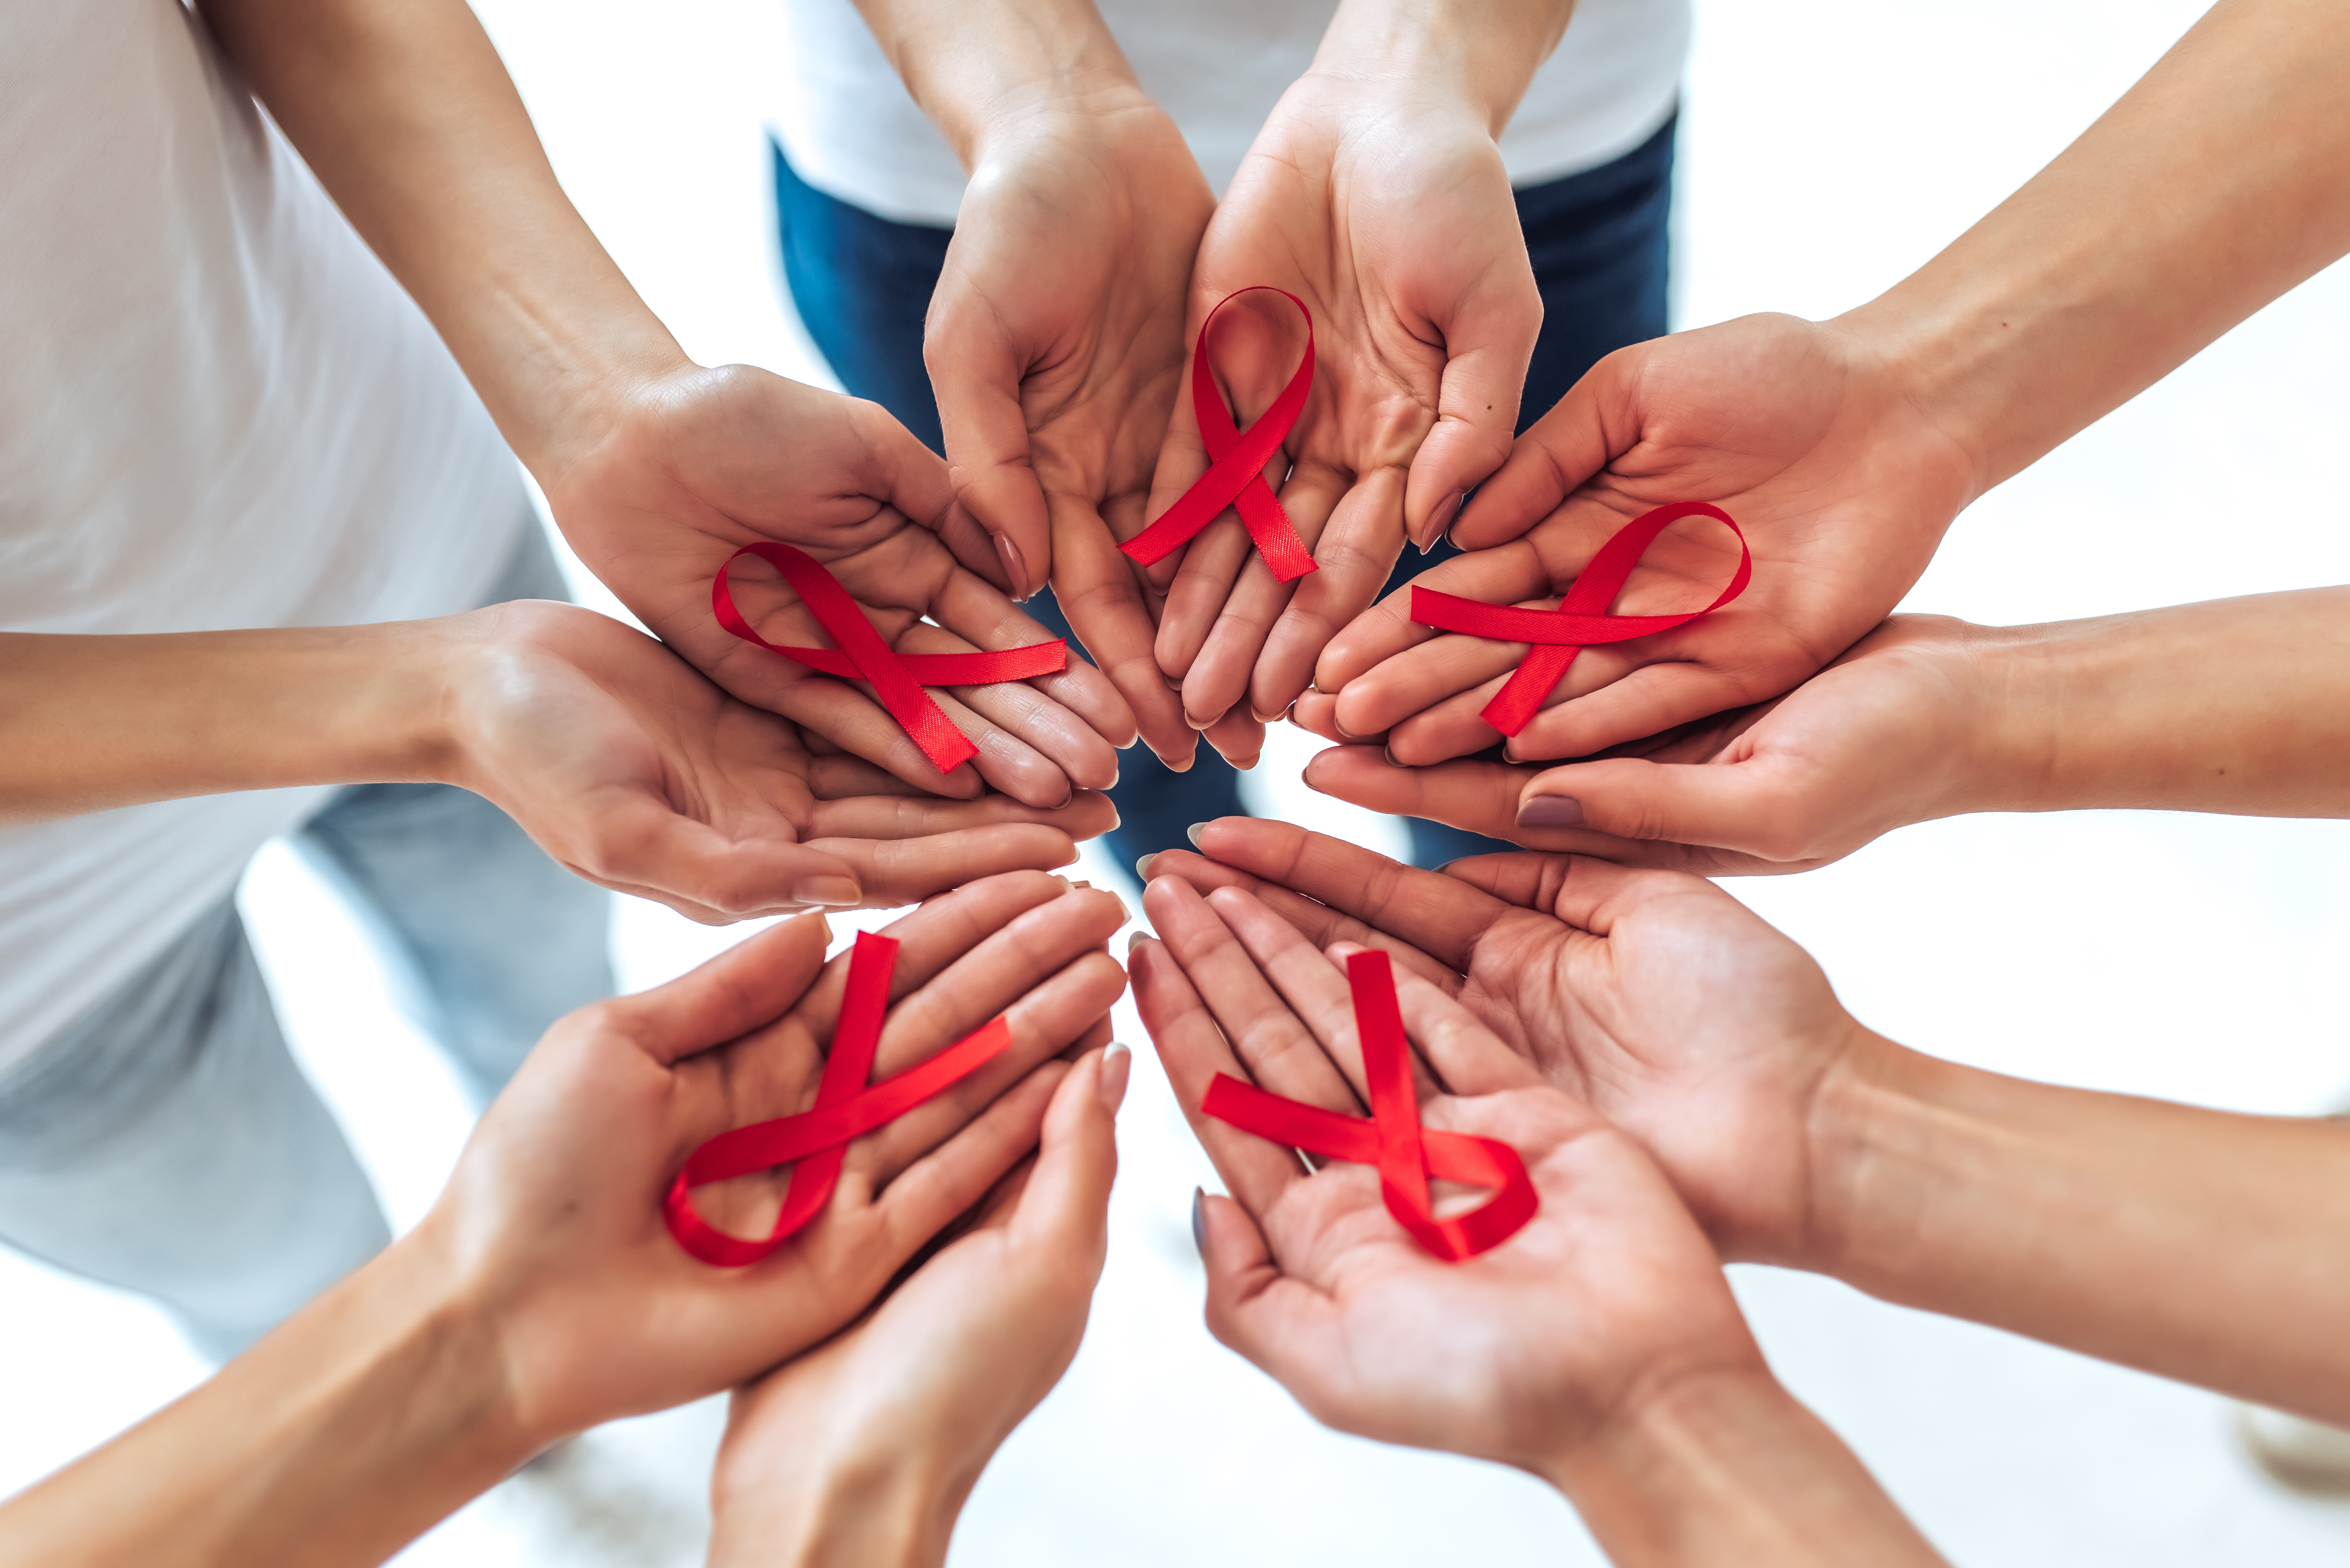 De acuerdo con la OMS, entre 2000 y 2019, las nuevas infecciones por el VIH disminuyeron en un 39% y las muertes relacionadas con el virus en un 51%, gracias a los tratamientos antirretrovirales. (Foto Prensa Libre: Shutterstock)